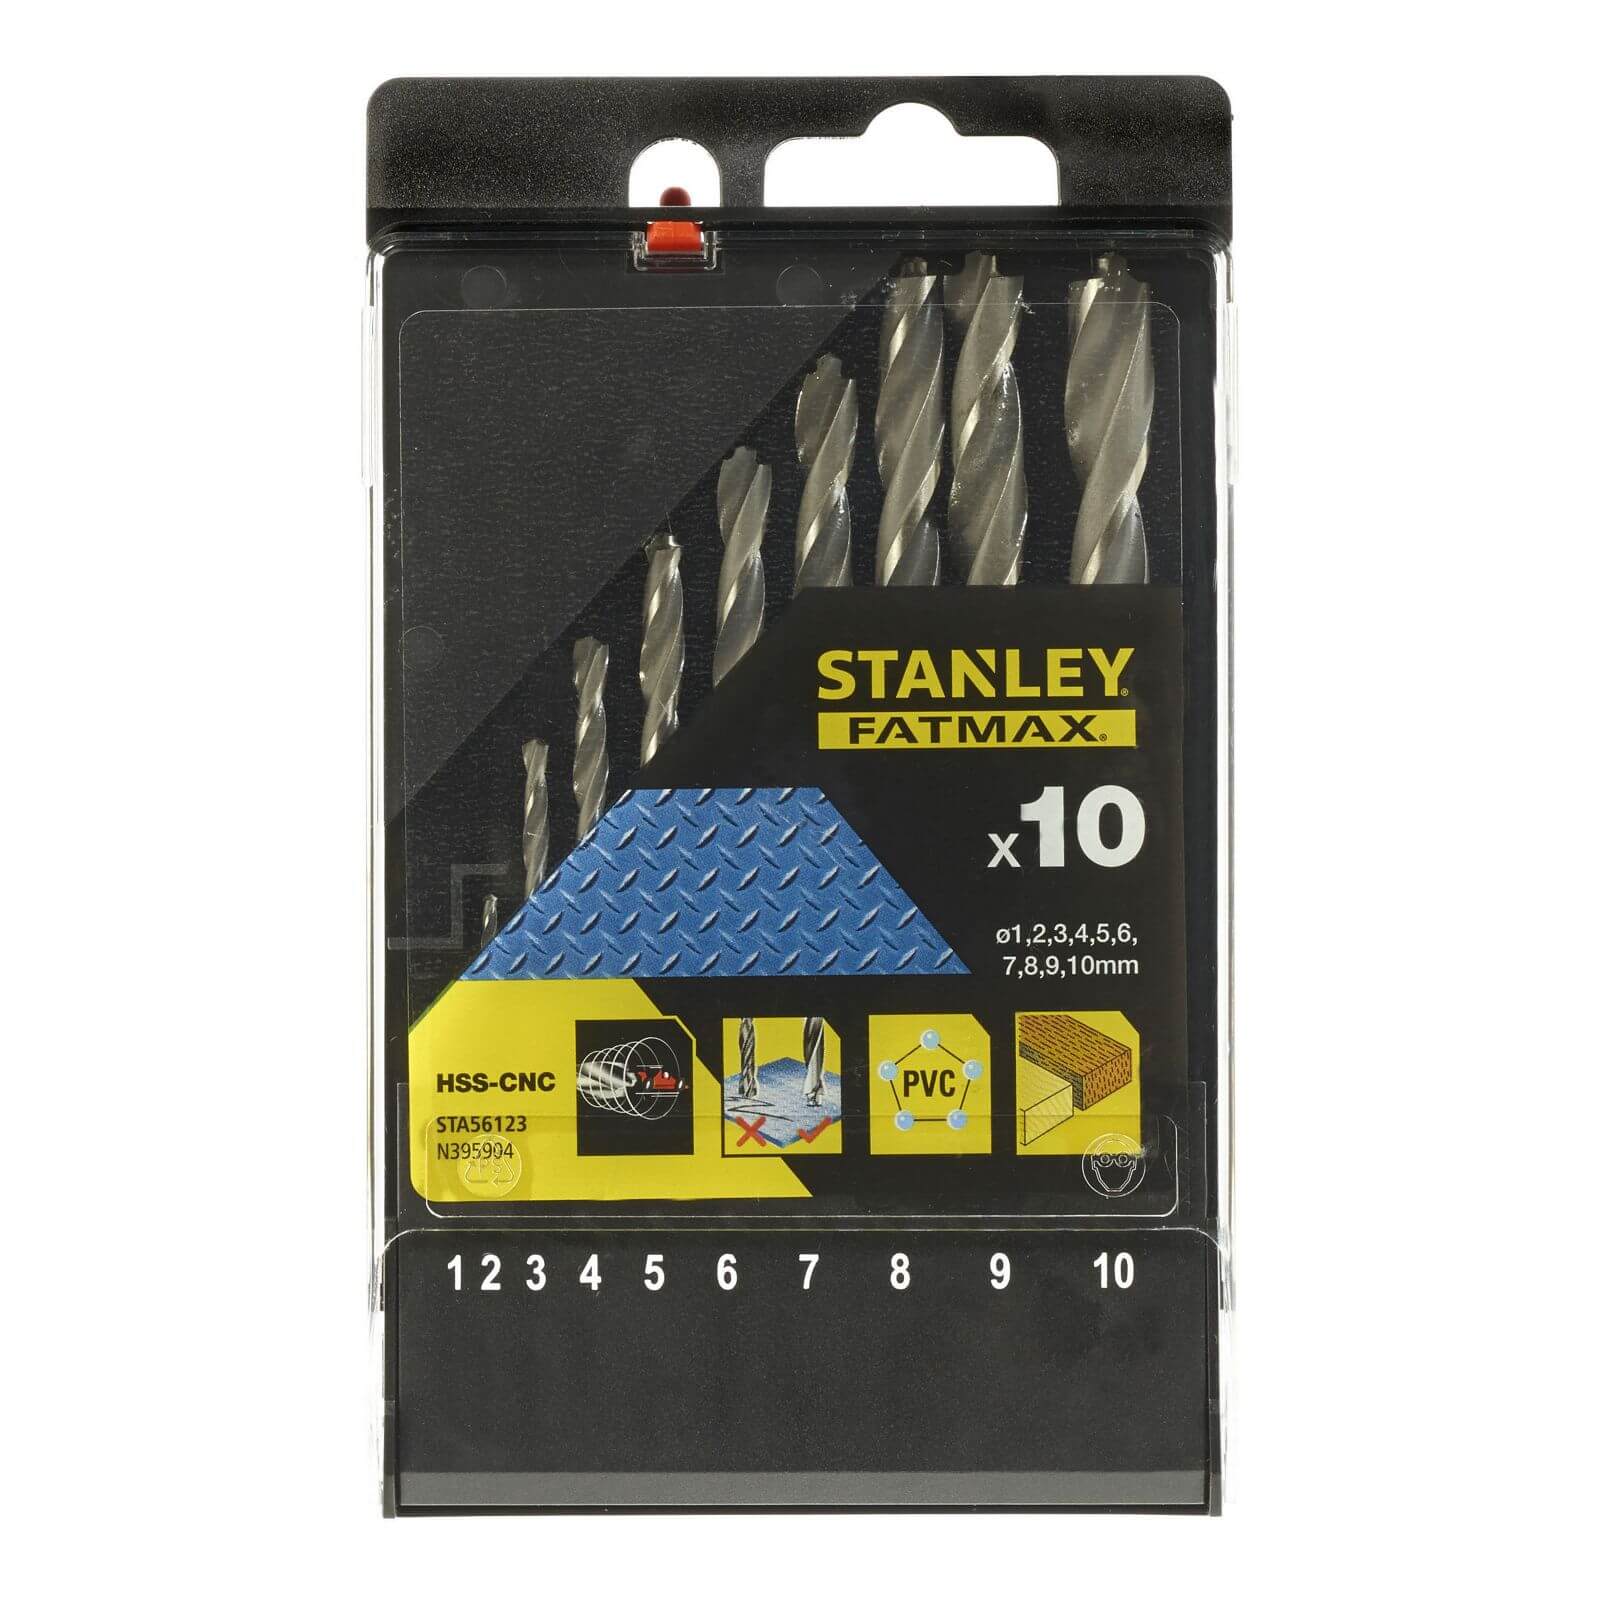 Stanley Fatmax 10Pc Bullet Metal Drill Bit Set -STA56123-XJ